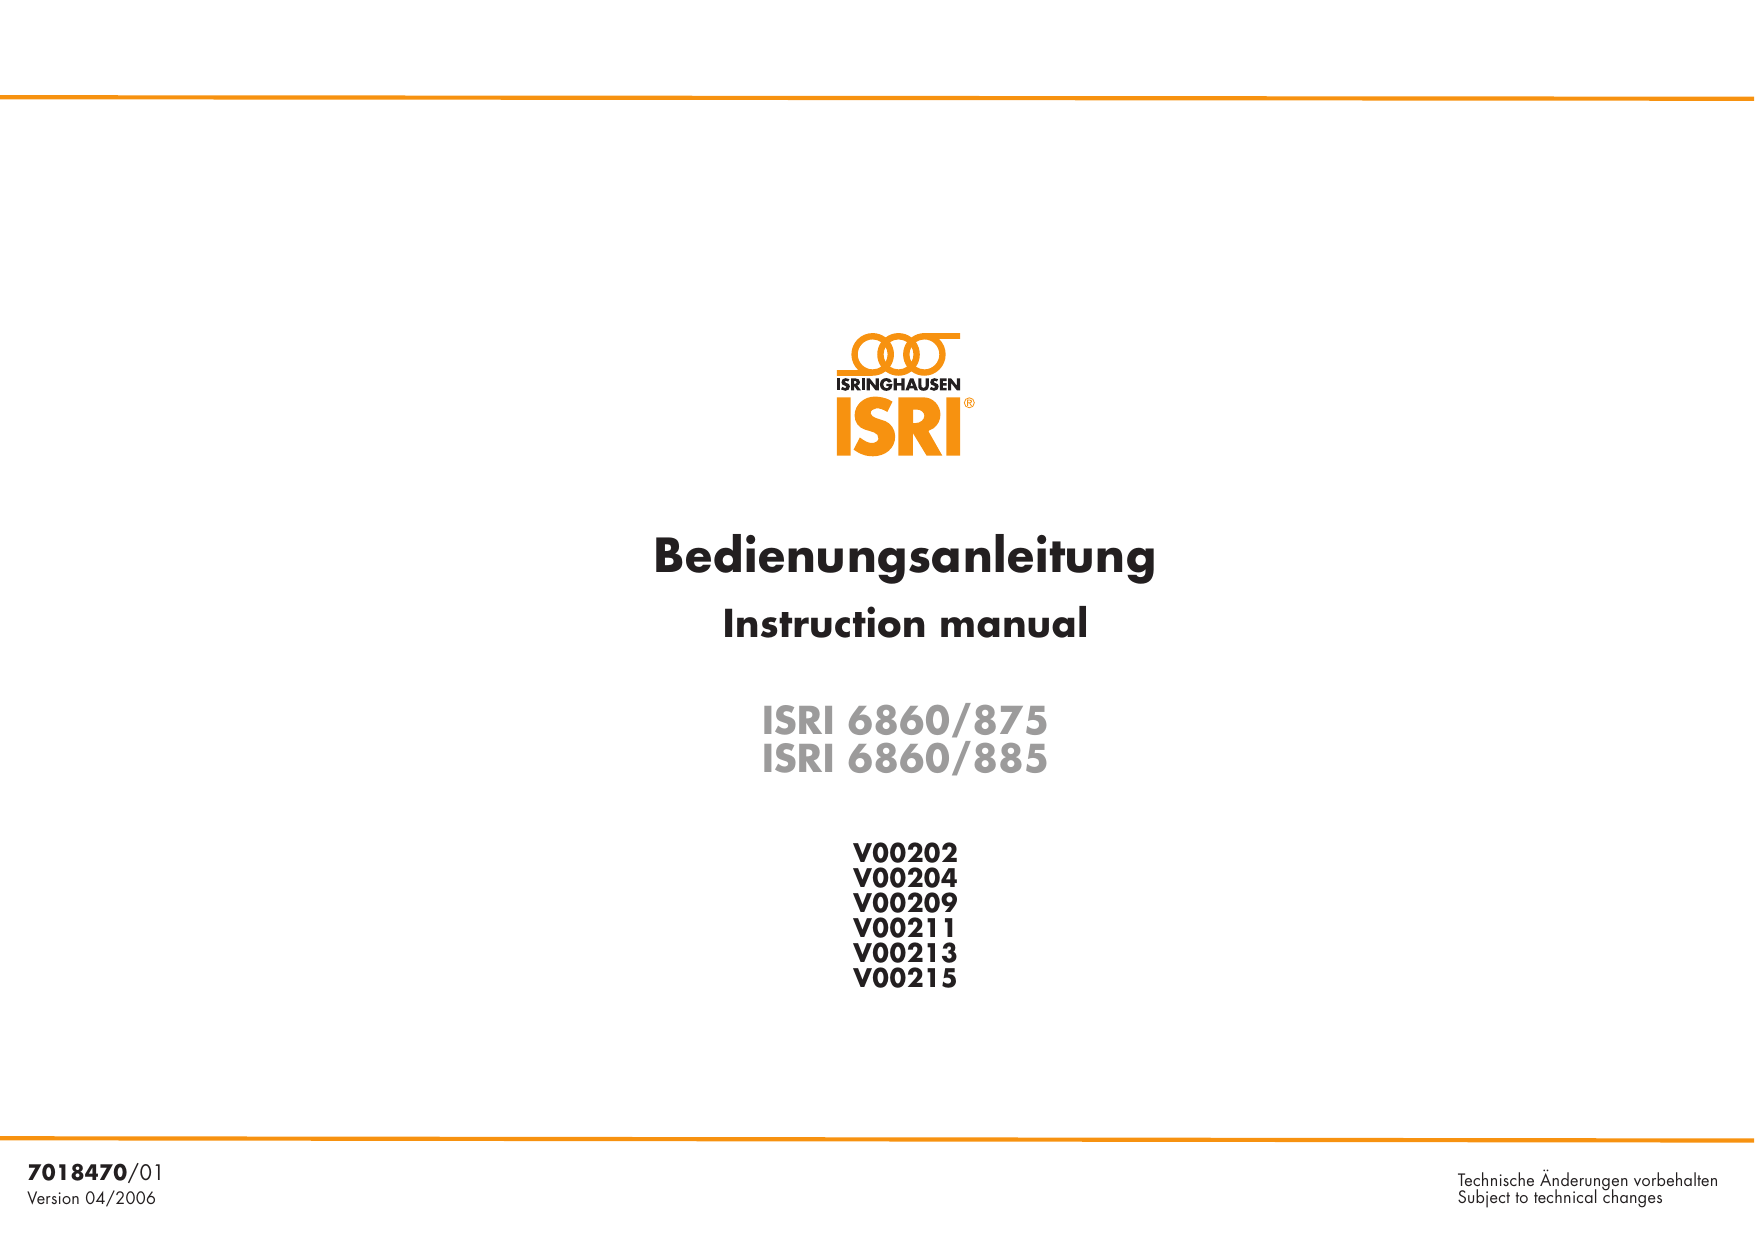 isri seat repair manual